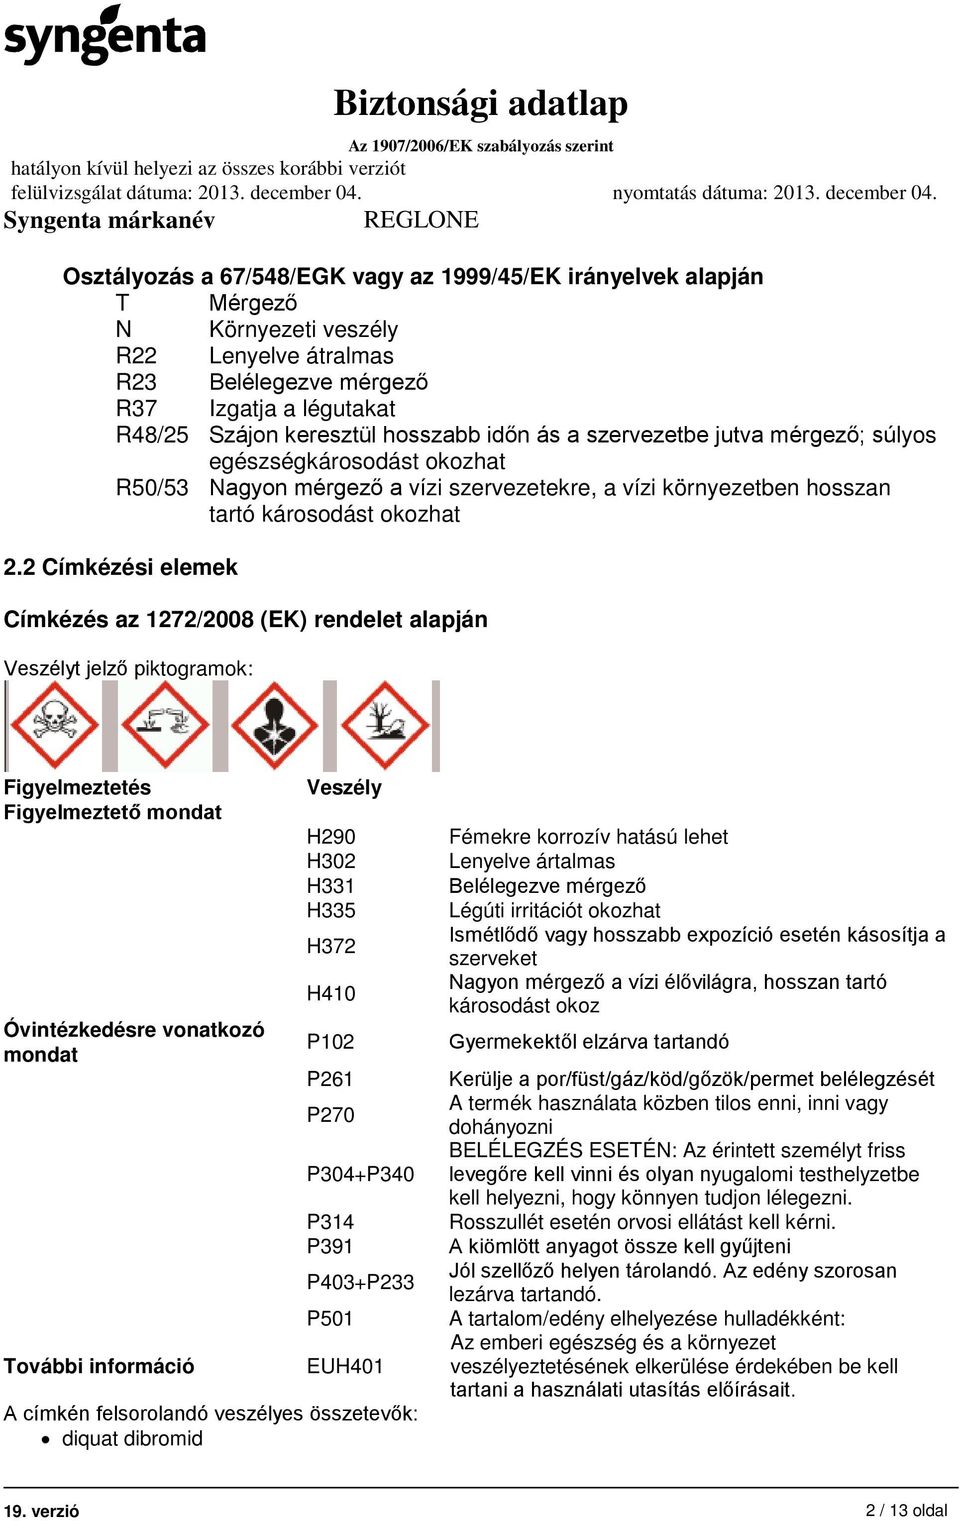 2 Címkézési elemek Címkézés az 1272/2008 (EK) rendelet alapján Veszélyt jelző piktogramok: Figyelmeztetés Figyelmeztető mondat Óvintézkedésre vonatkozó mondat További információ Veszély H290 H302